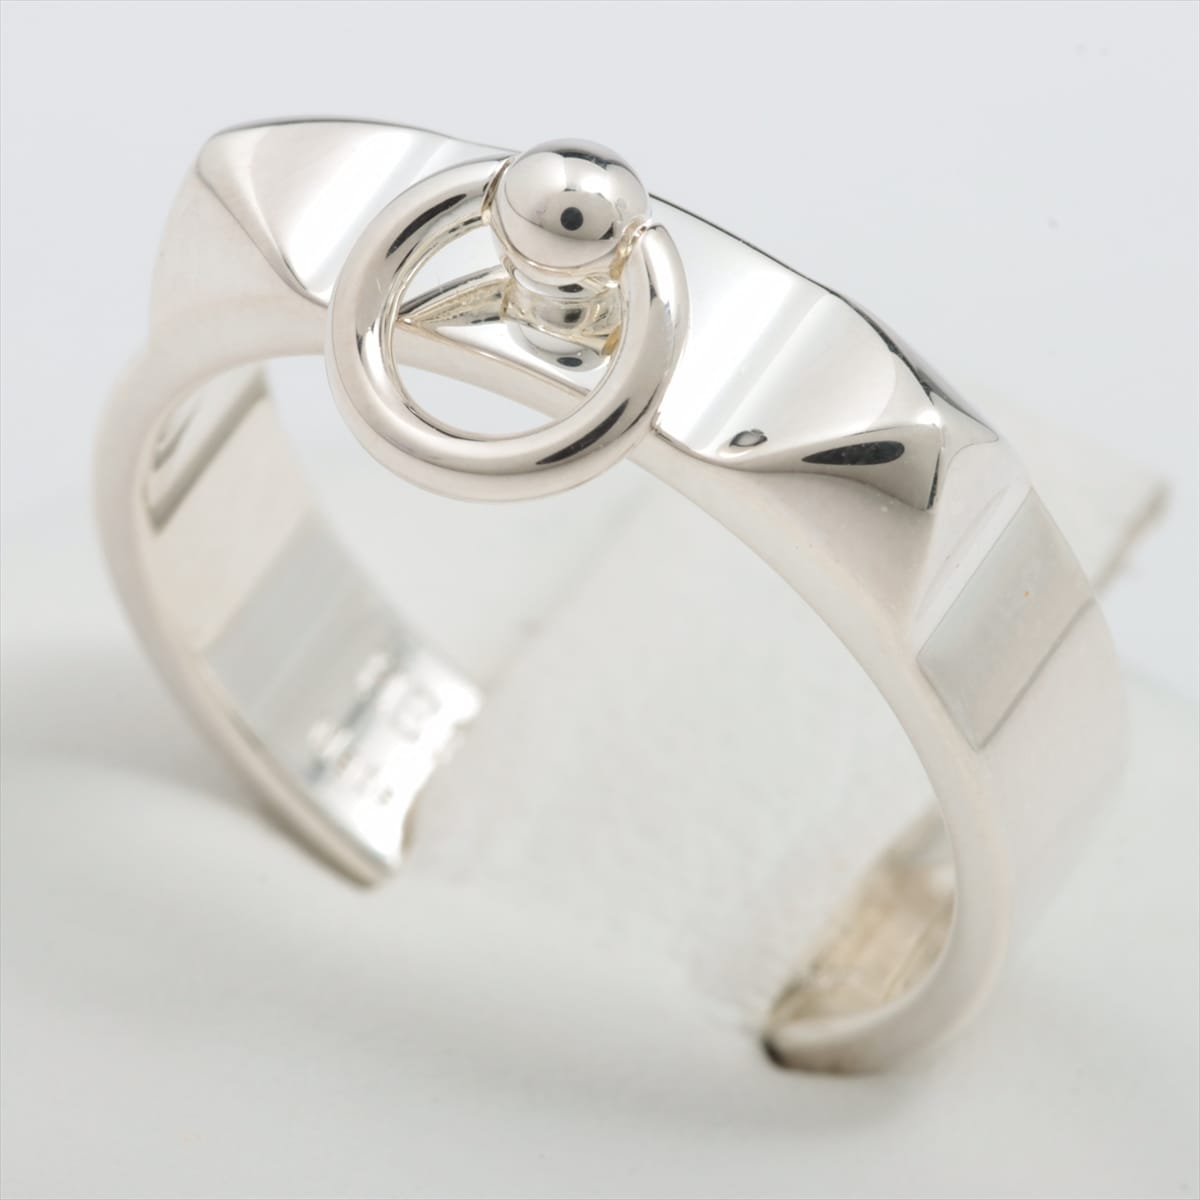 Hermès Collier de Chien rings 55 925 4.5g Silver